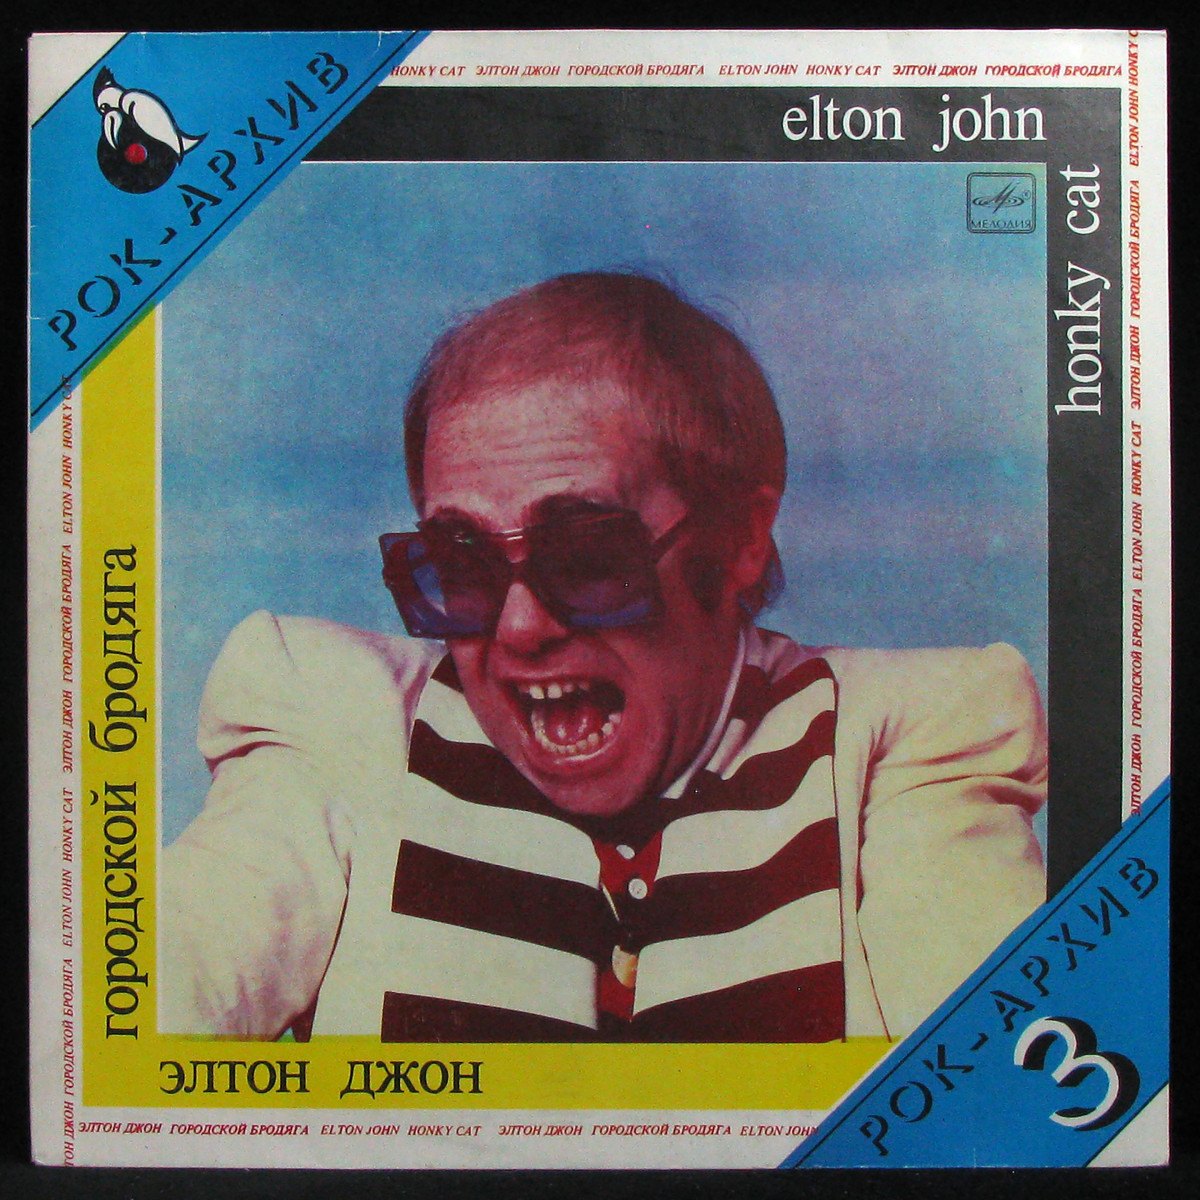 LP Elton John — Honky Cat = Городской Бродяга фото